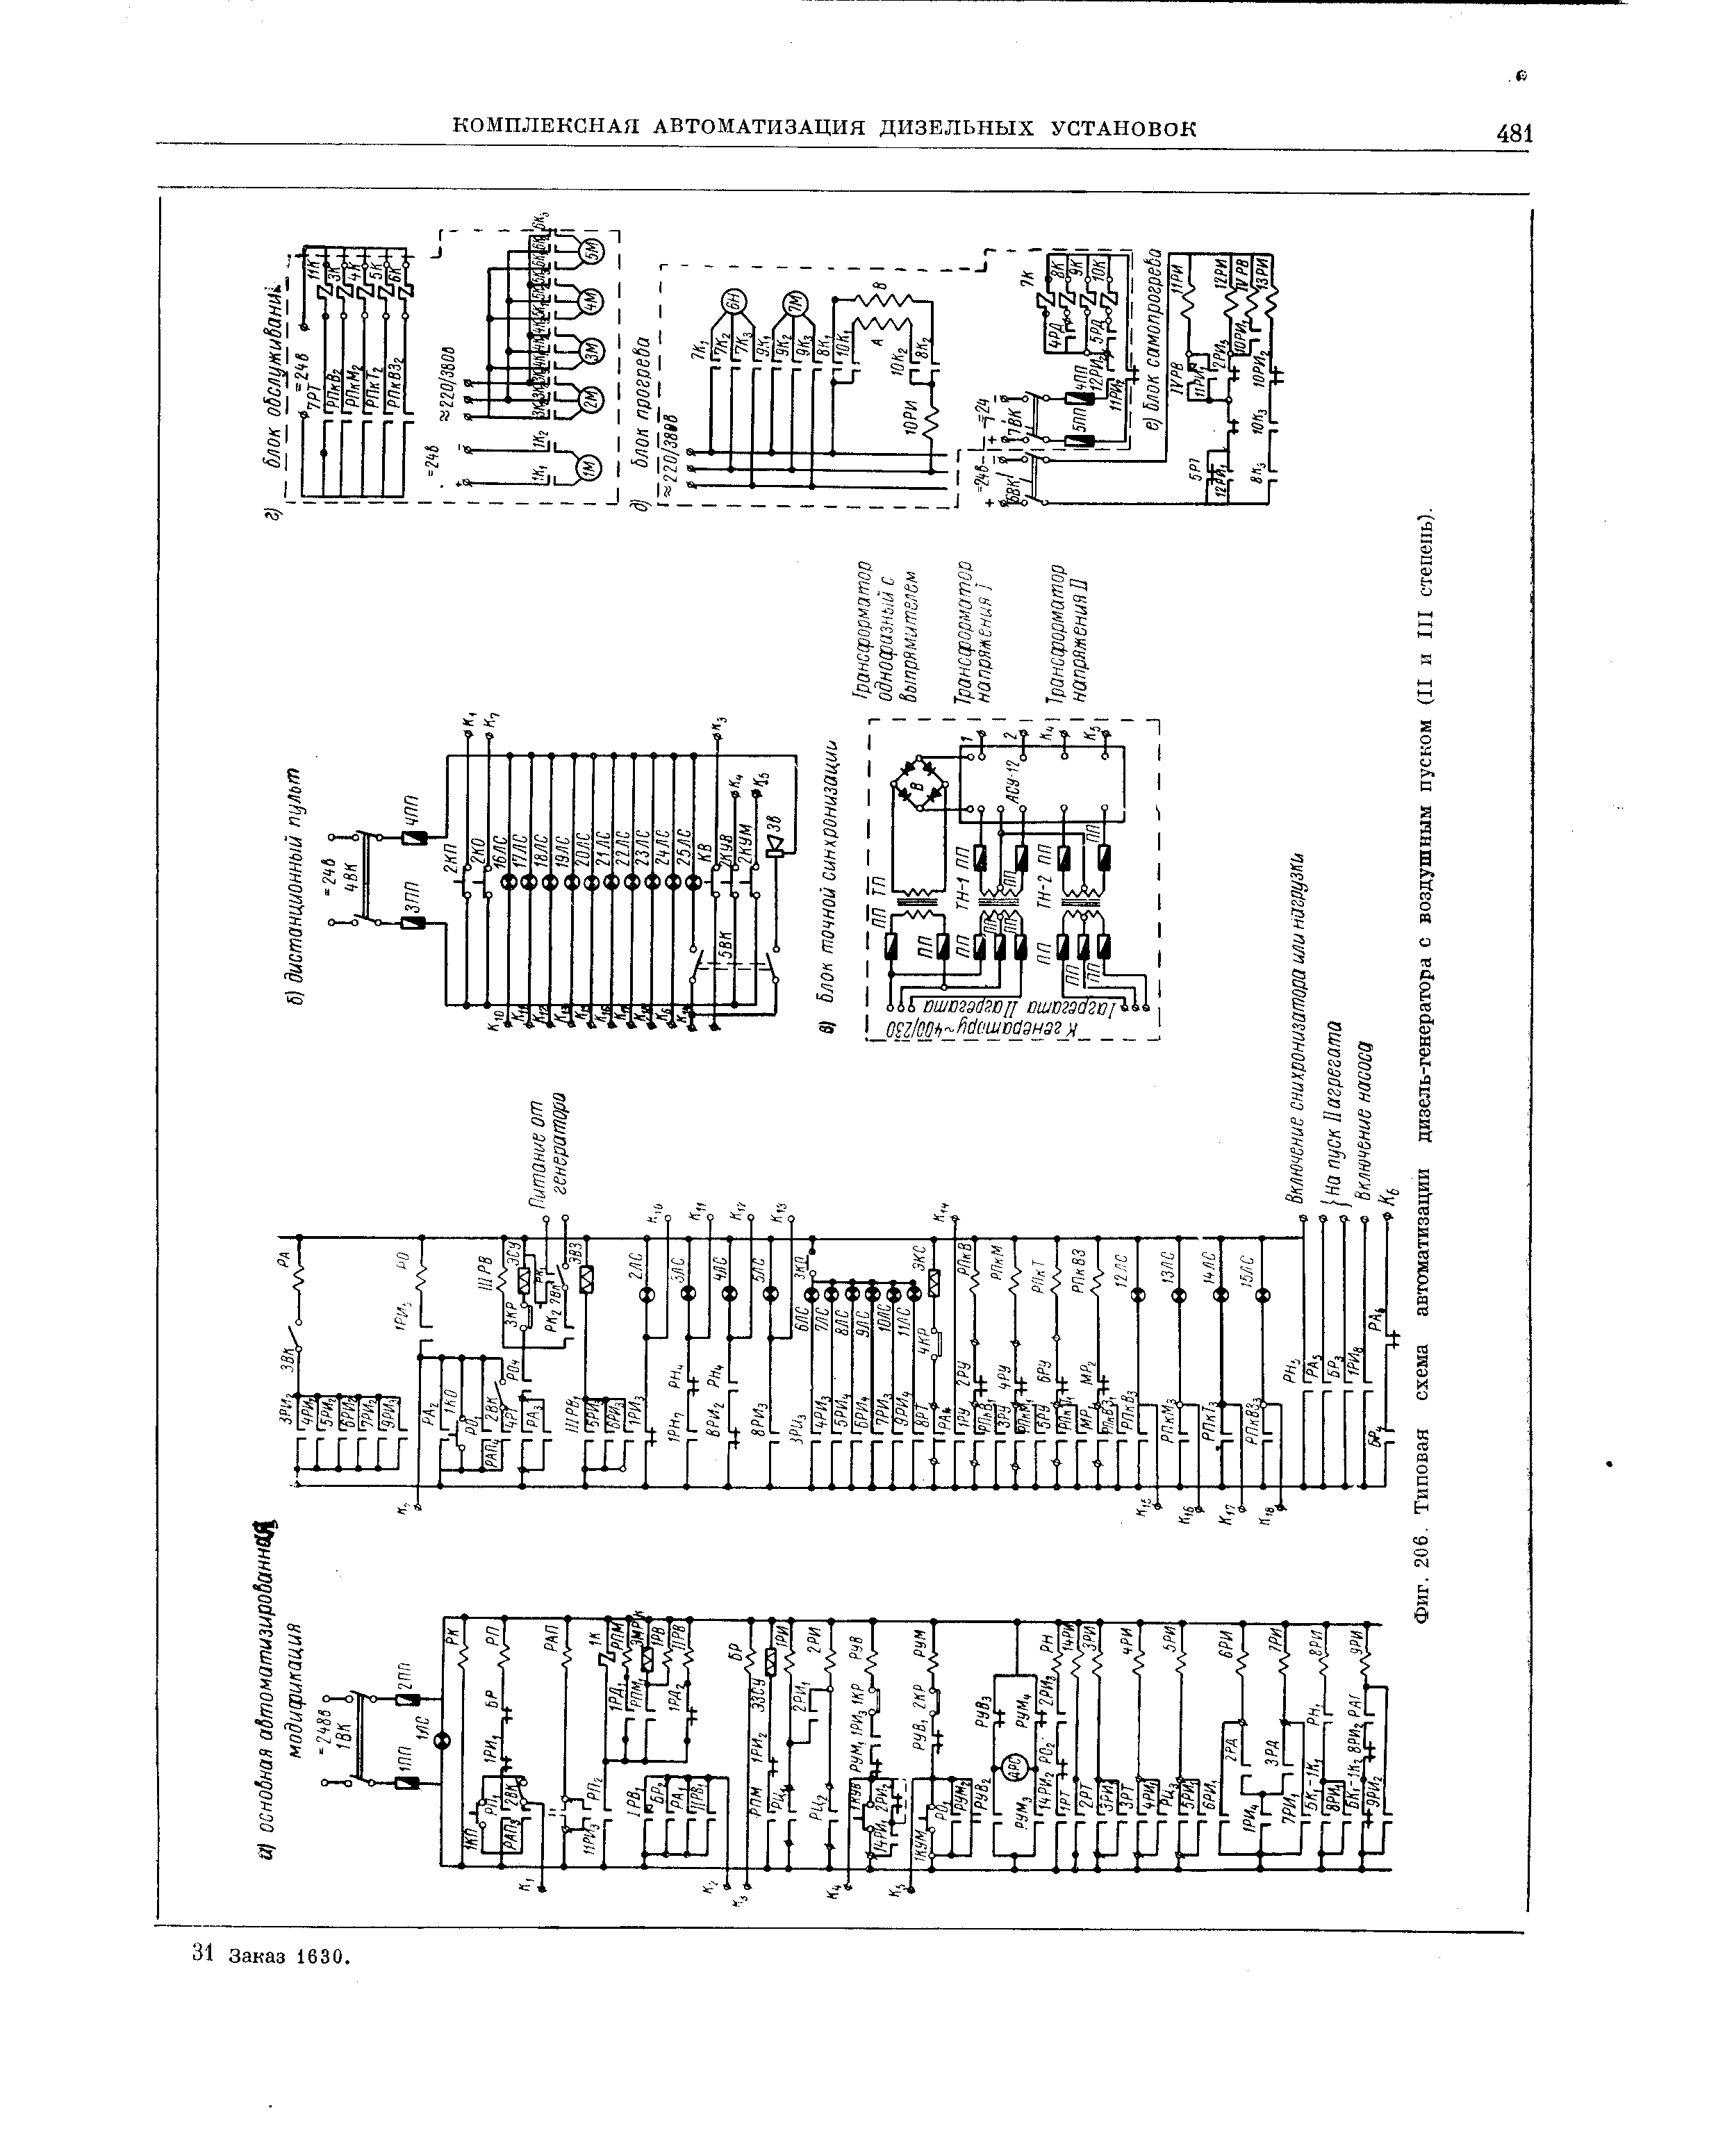 Фиг. 206. Типовая схема автоматизации дизель-генератора с воздушным пуском (II и III степень).
